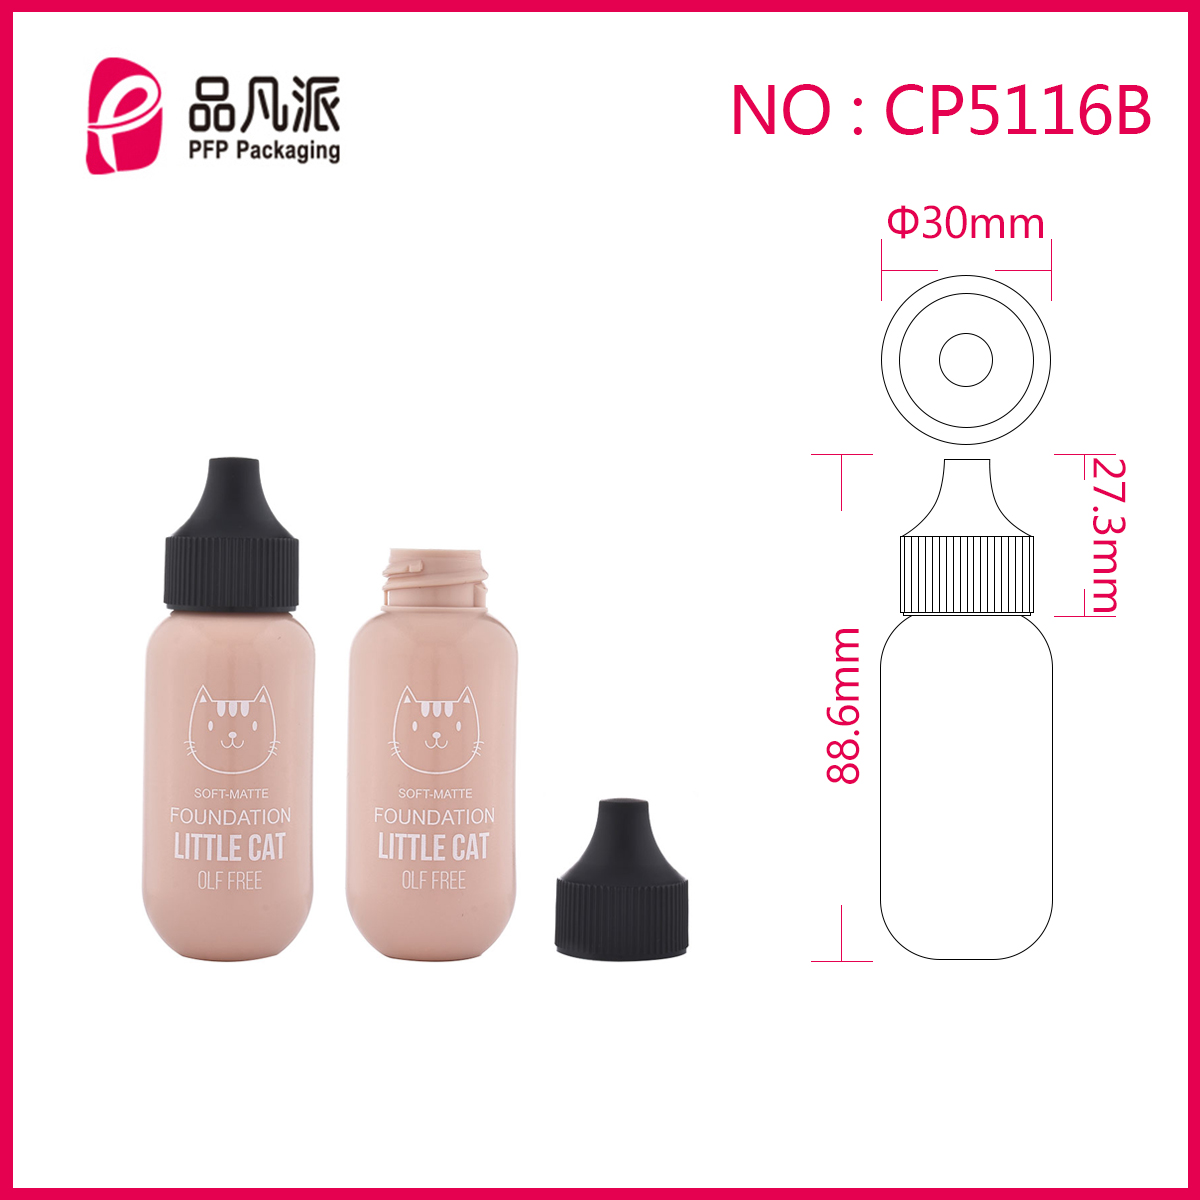 Mini Feeding-bottle Moisturizing Foundation Make-up CP5116B